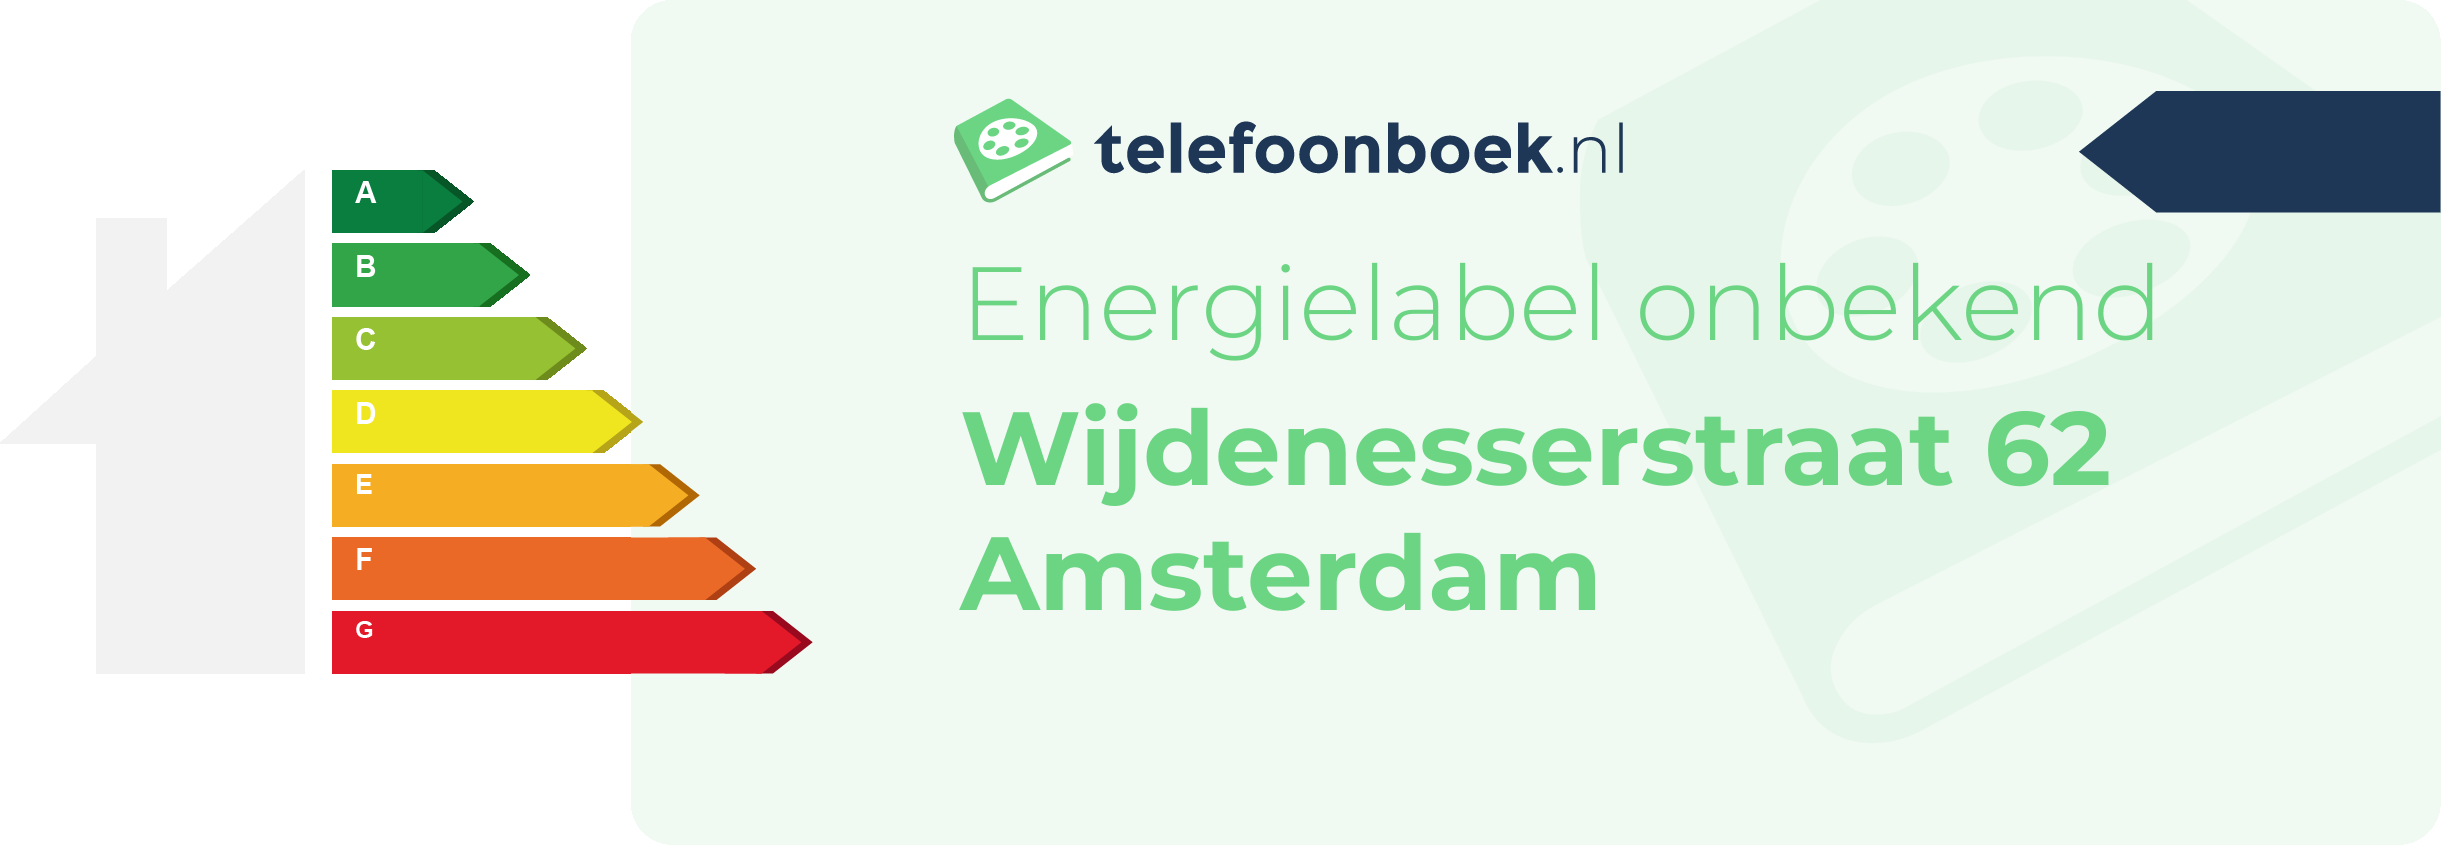 Energielabel Wijdenesserstraat 62 Amsterdam